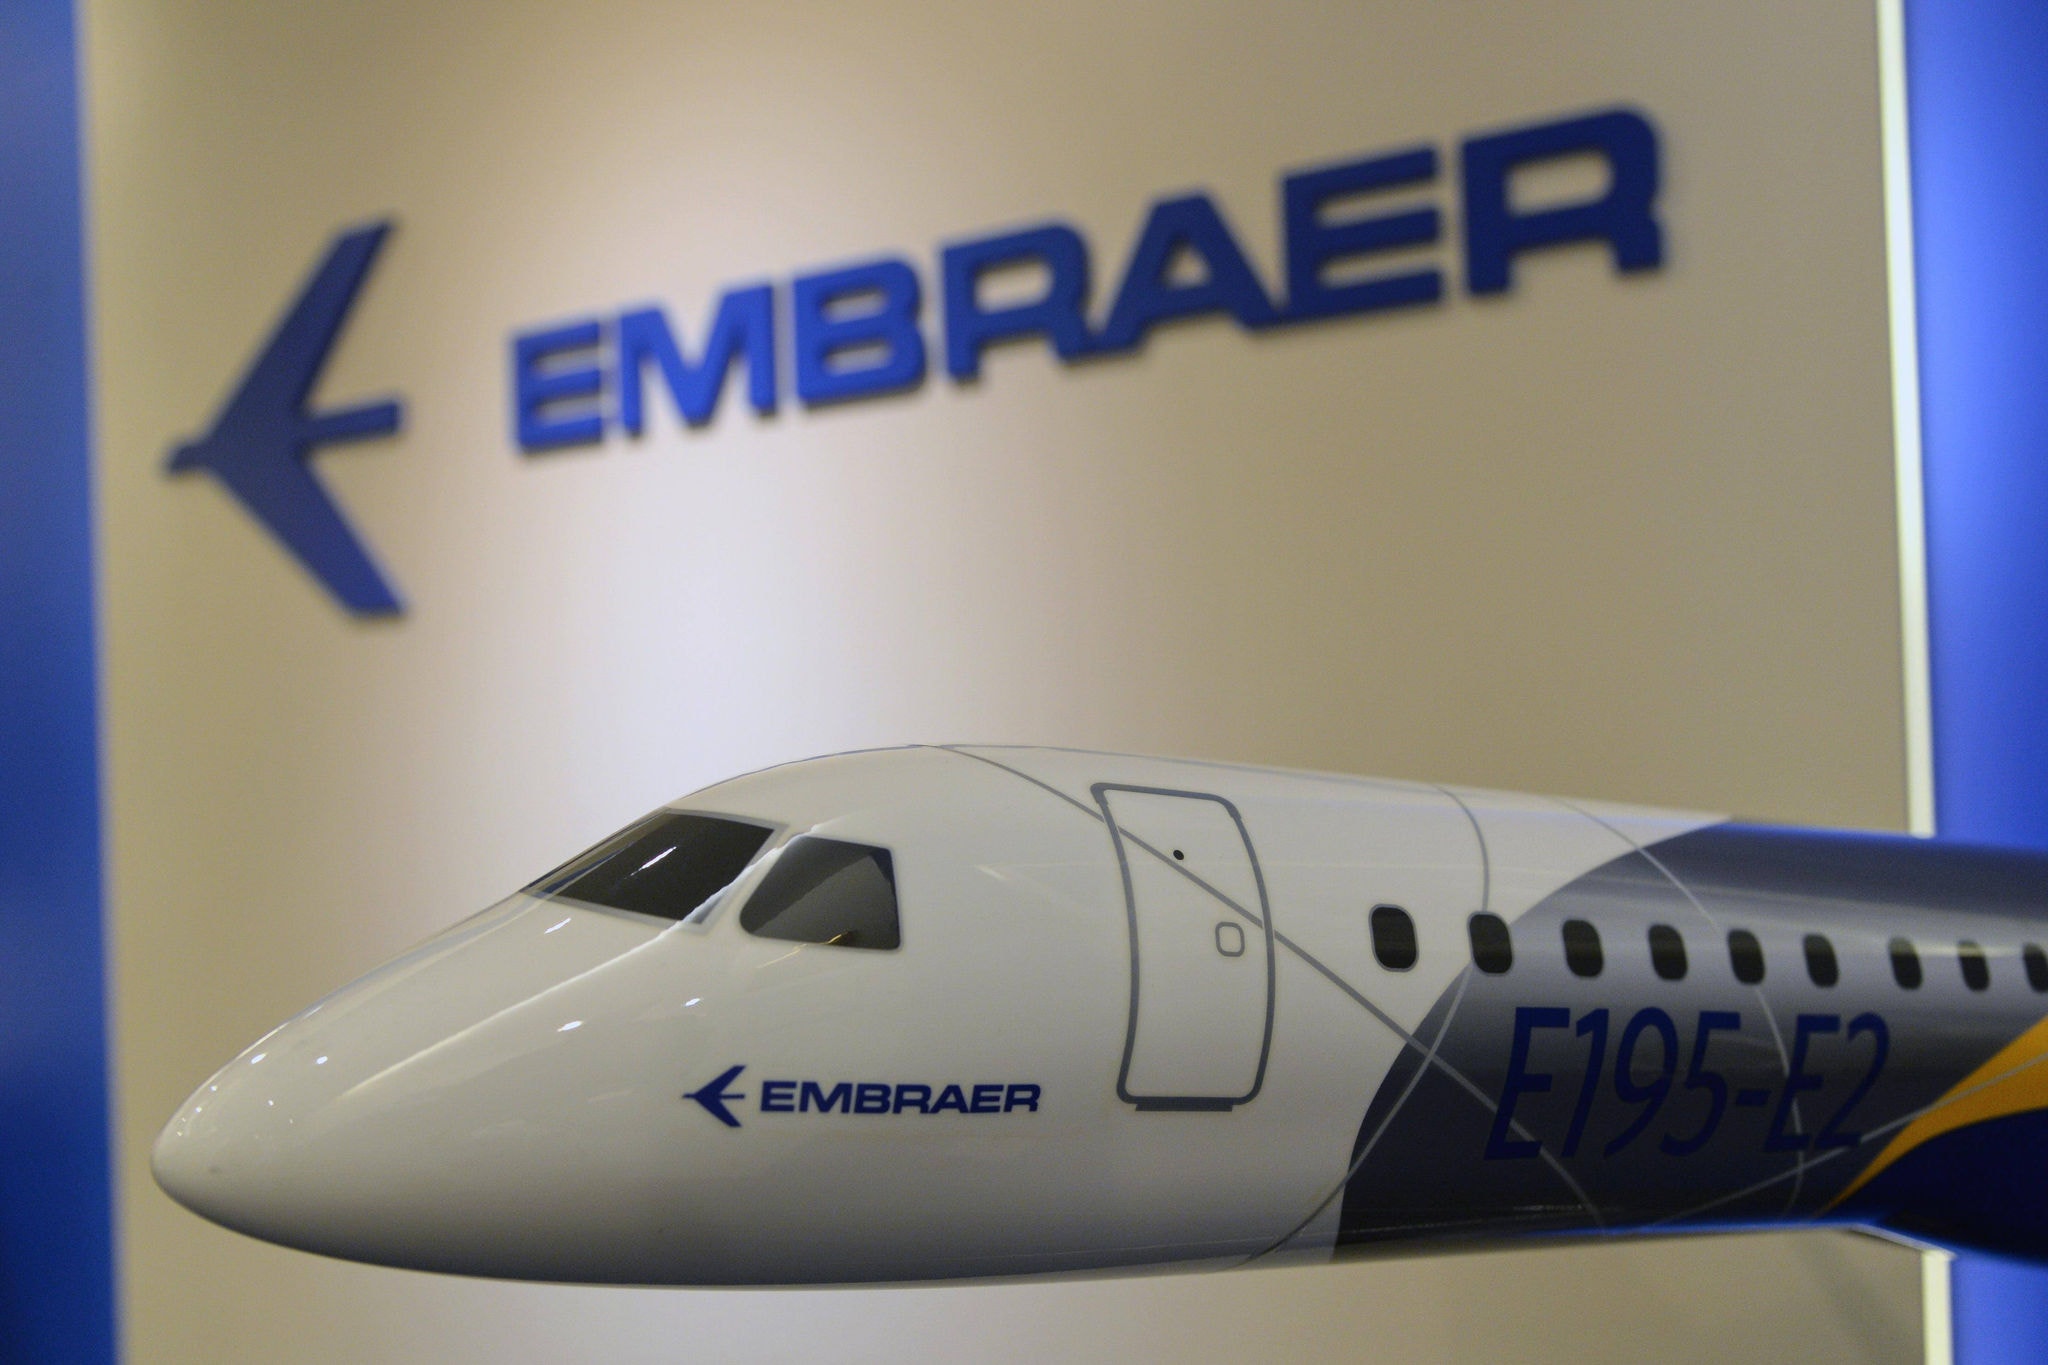 A Embraer é uma fabricante de aviões brasileira